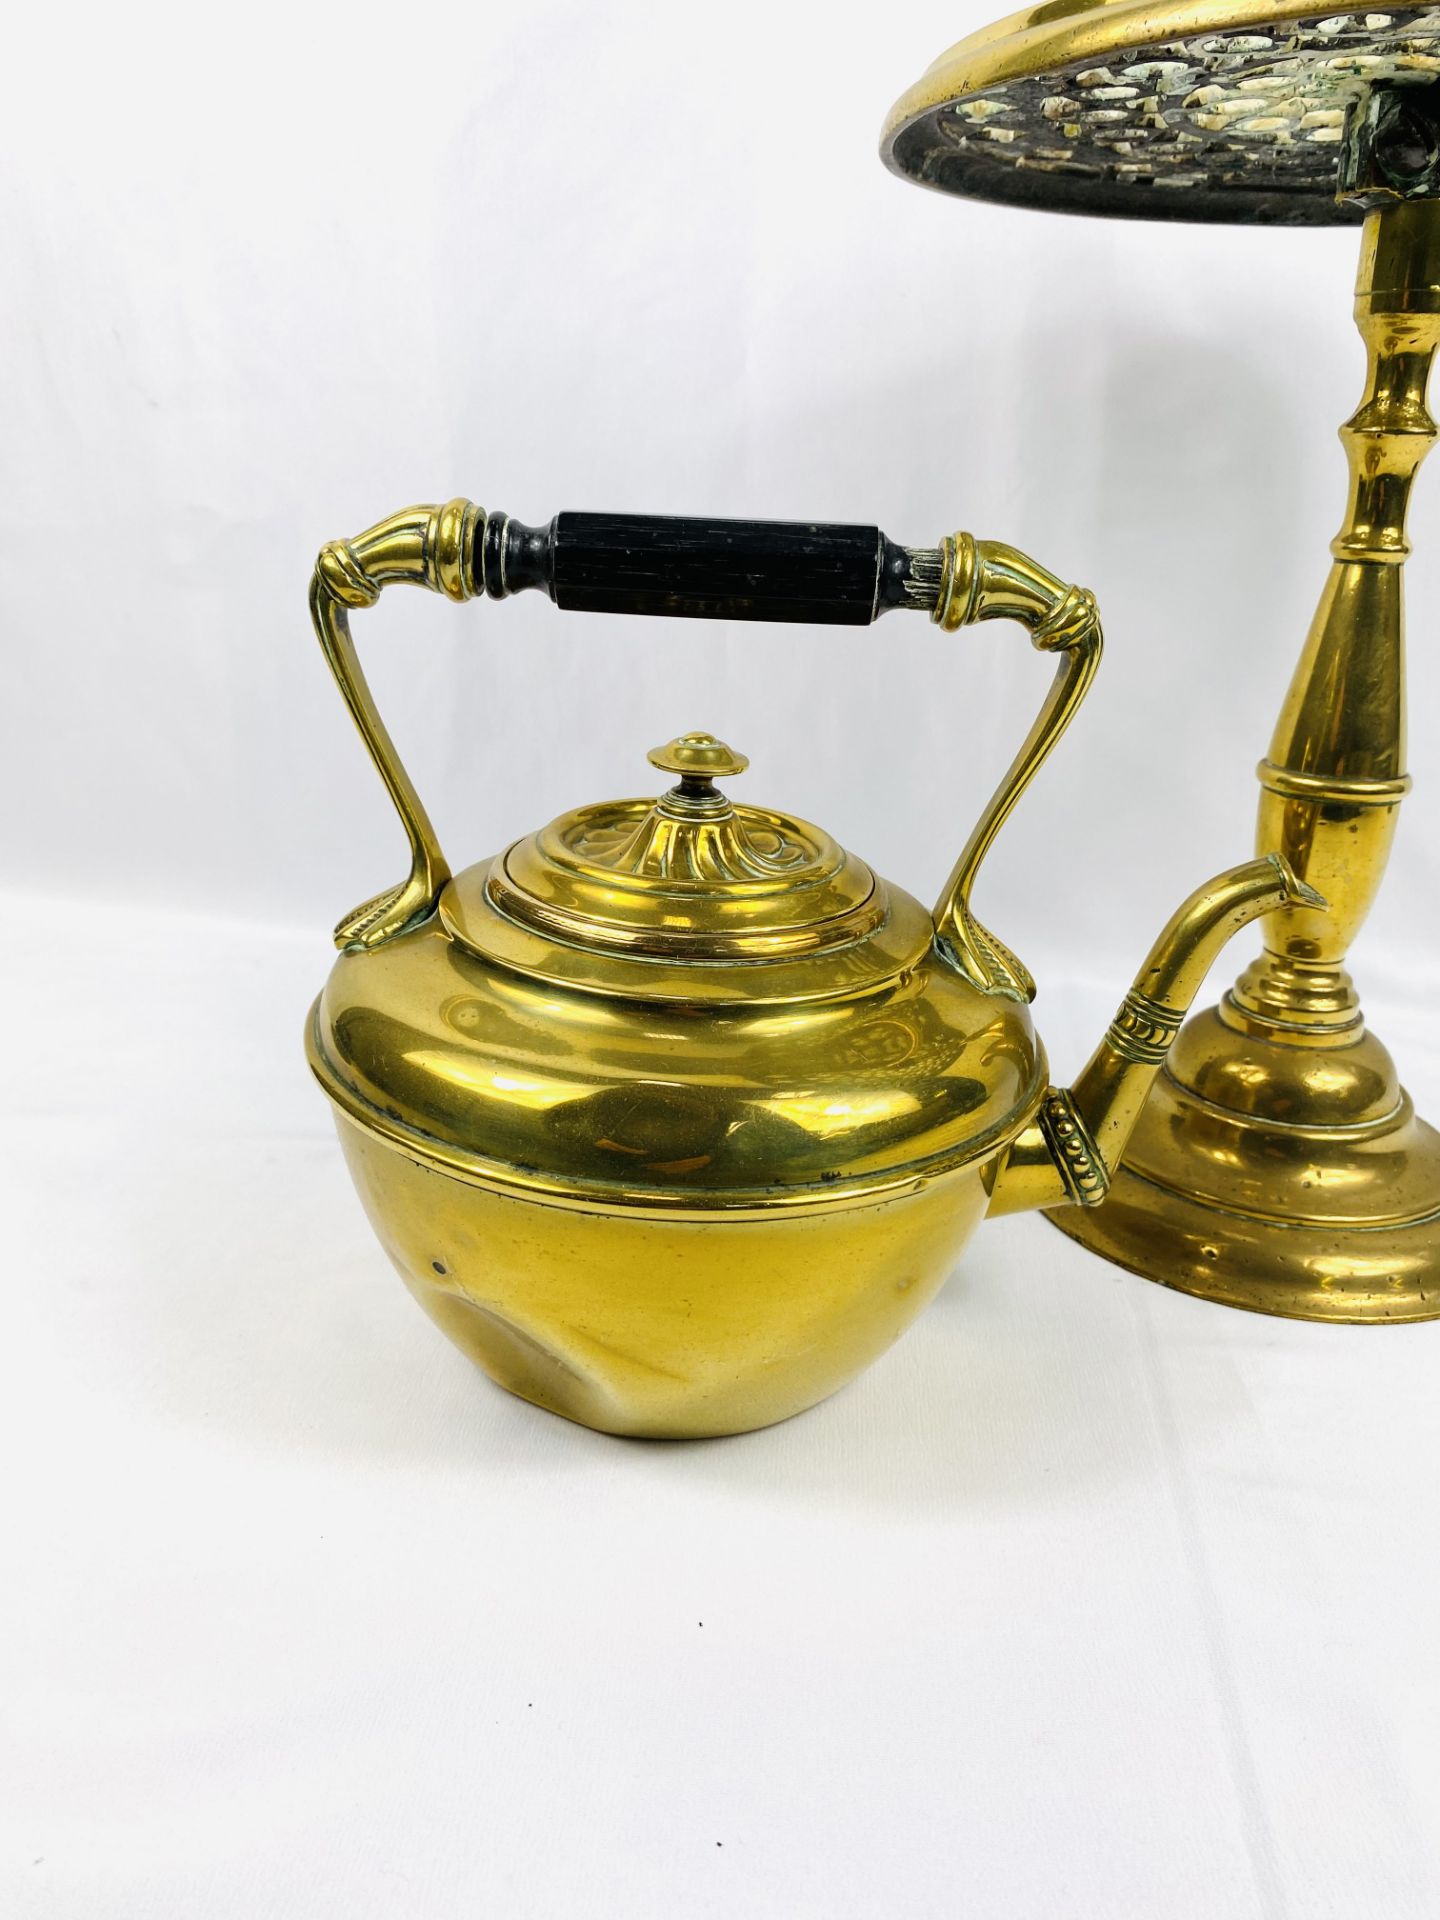 Brass kettle stand with brass kettle - Bild 2 aus 5